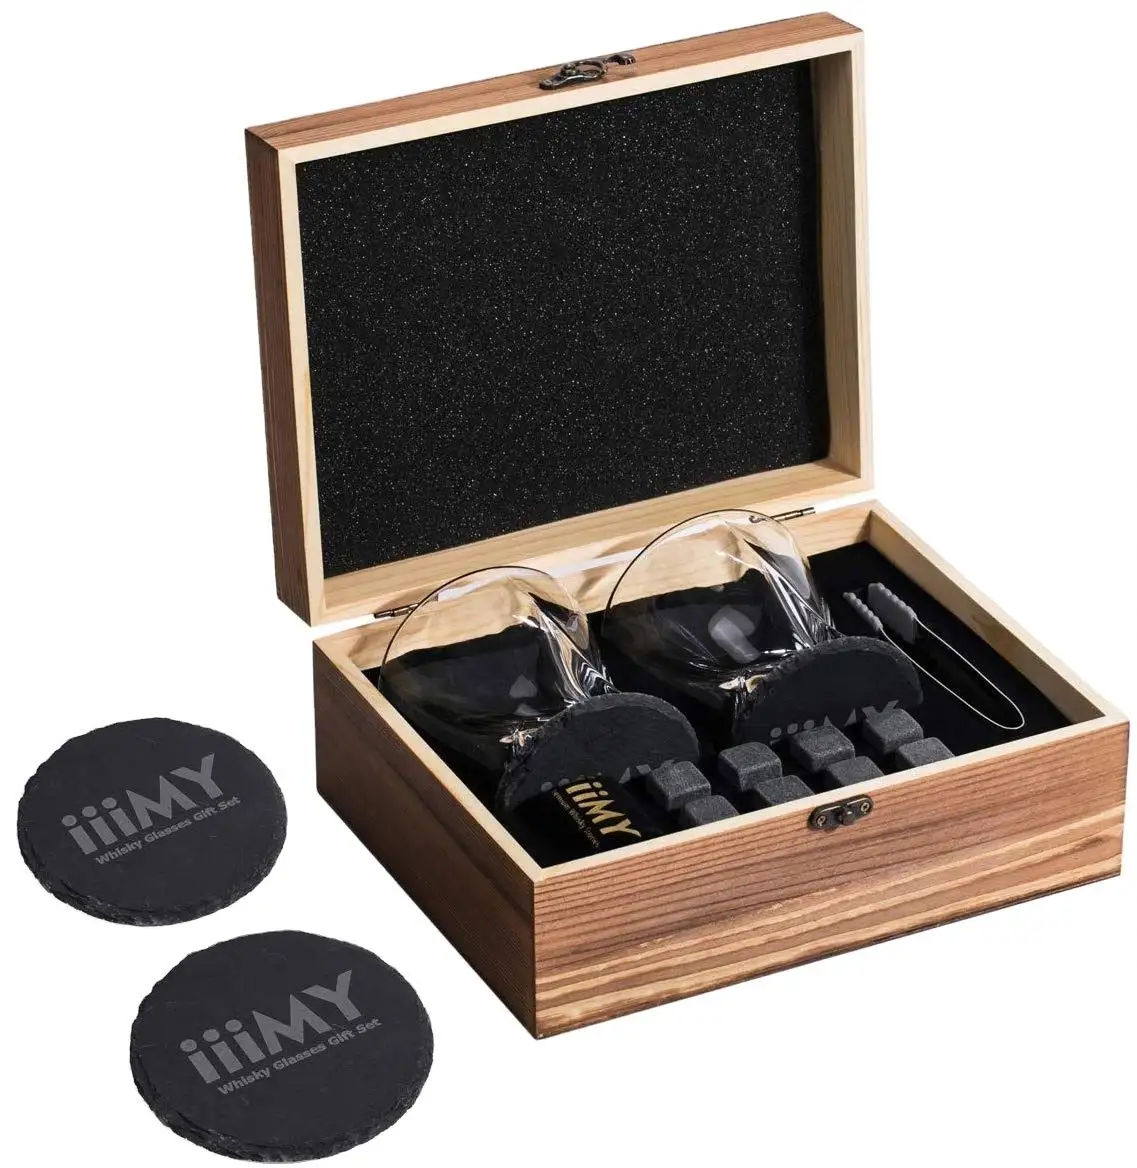 Виски камни и виски стеклянный подарочный набор в коробке гранитный Виски камни хрустальные очки деревянная коробка аксессуары для бара